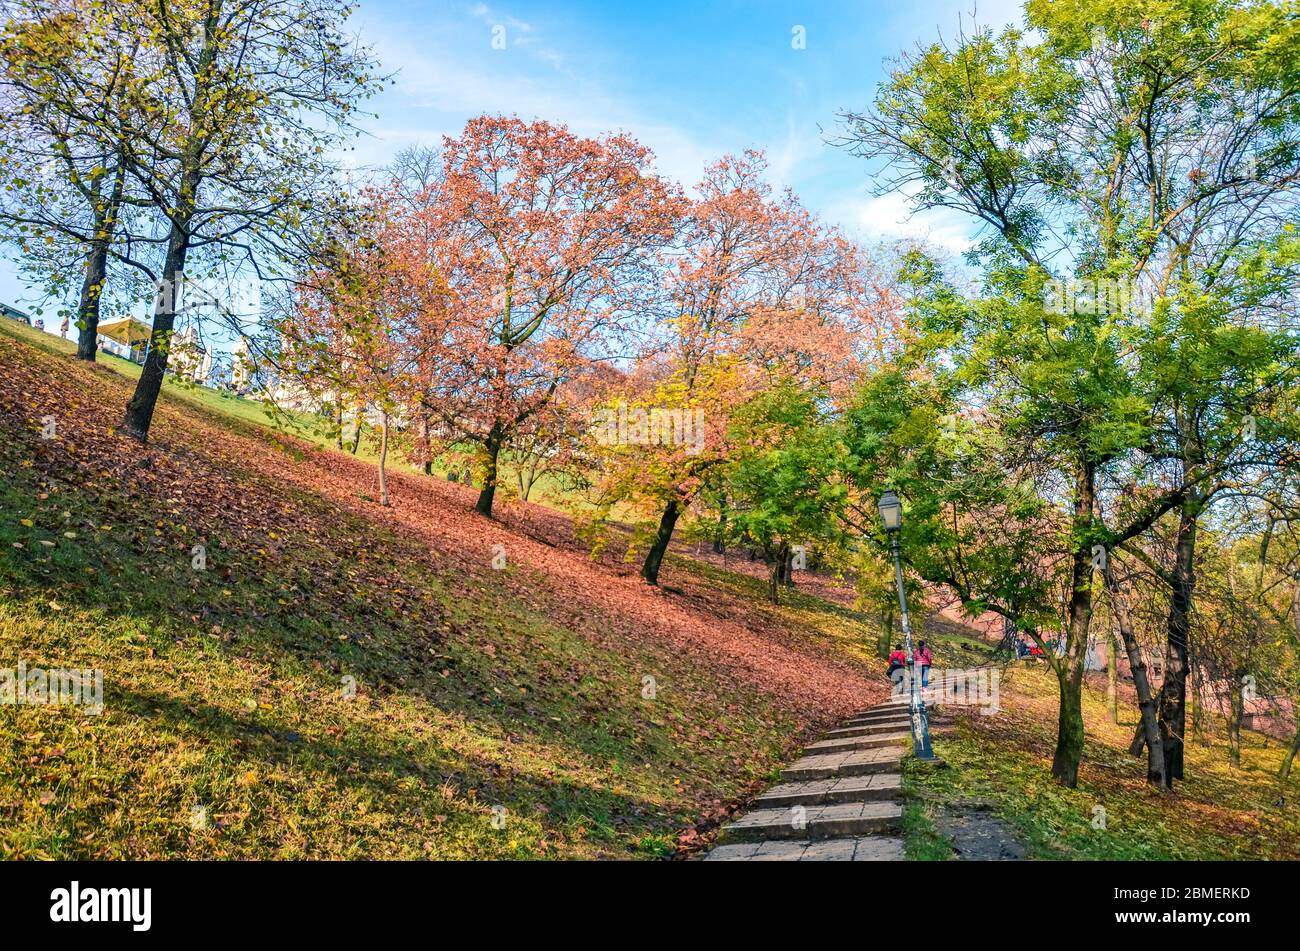 Herbstbäume entlang der Treppe im Park, der zum Budaer Schloss in Budapest, Ungarn führt. Herbstzweige und Laub. Herbstbäume in orange und rot. Jahreszeiten des Jahres. Horizontales Foto. Stockfoto